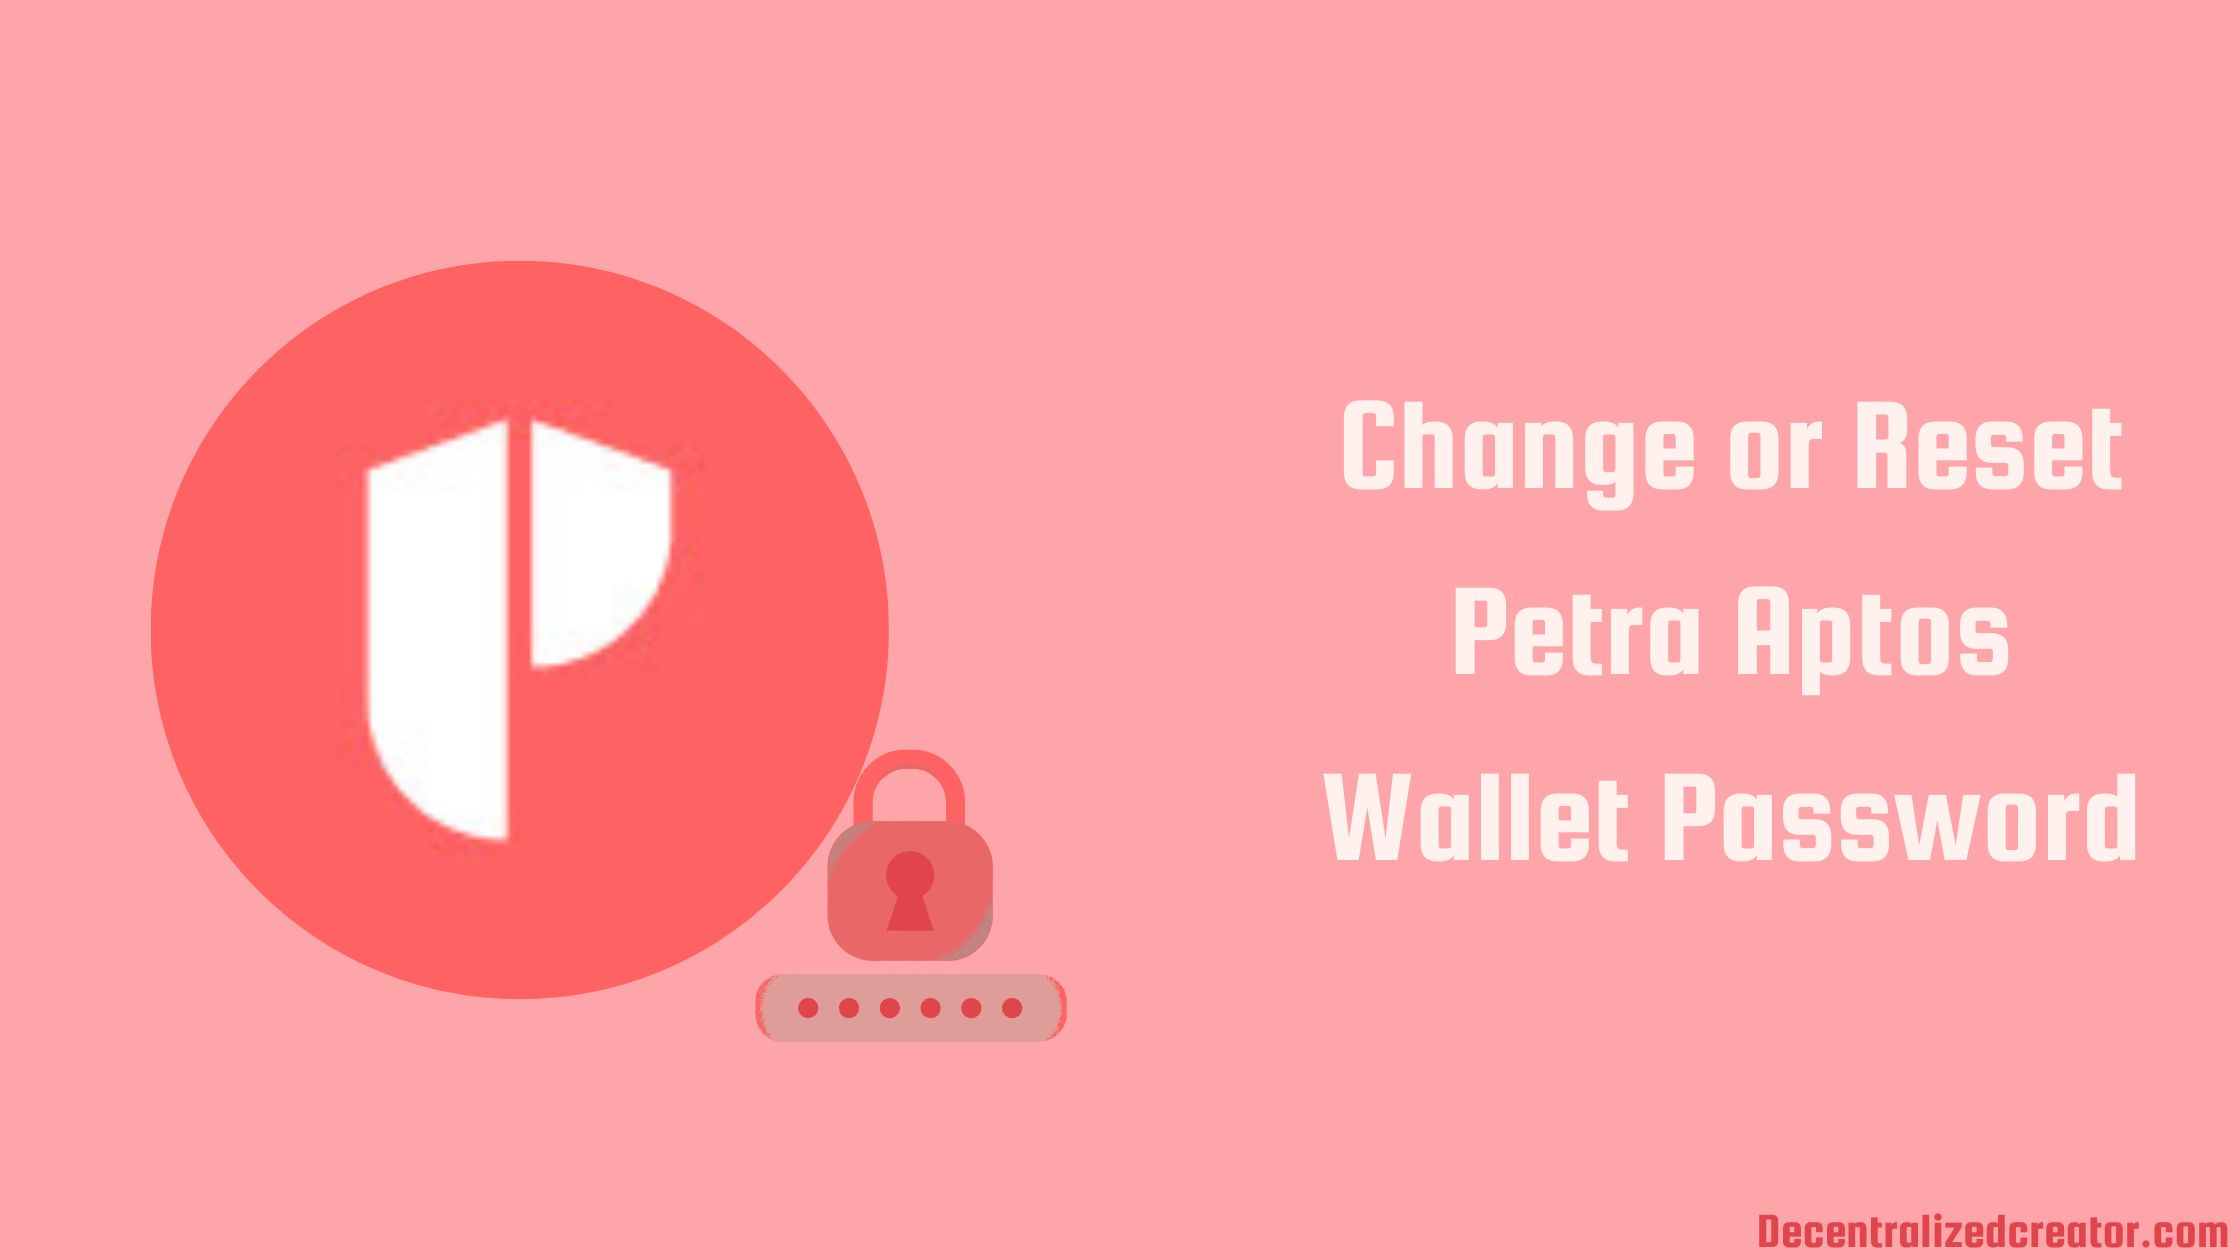 Change or Reset Petra Aptos Wallet Password